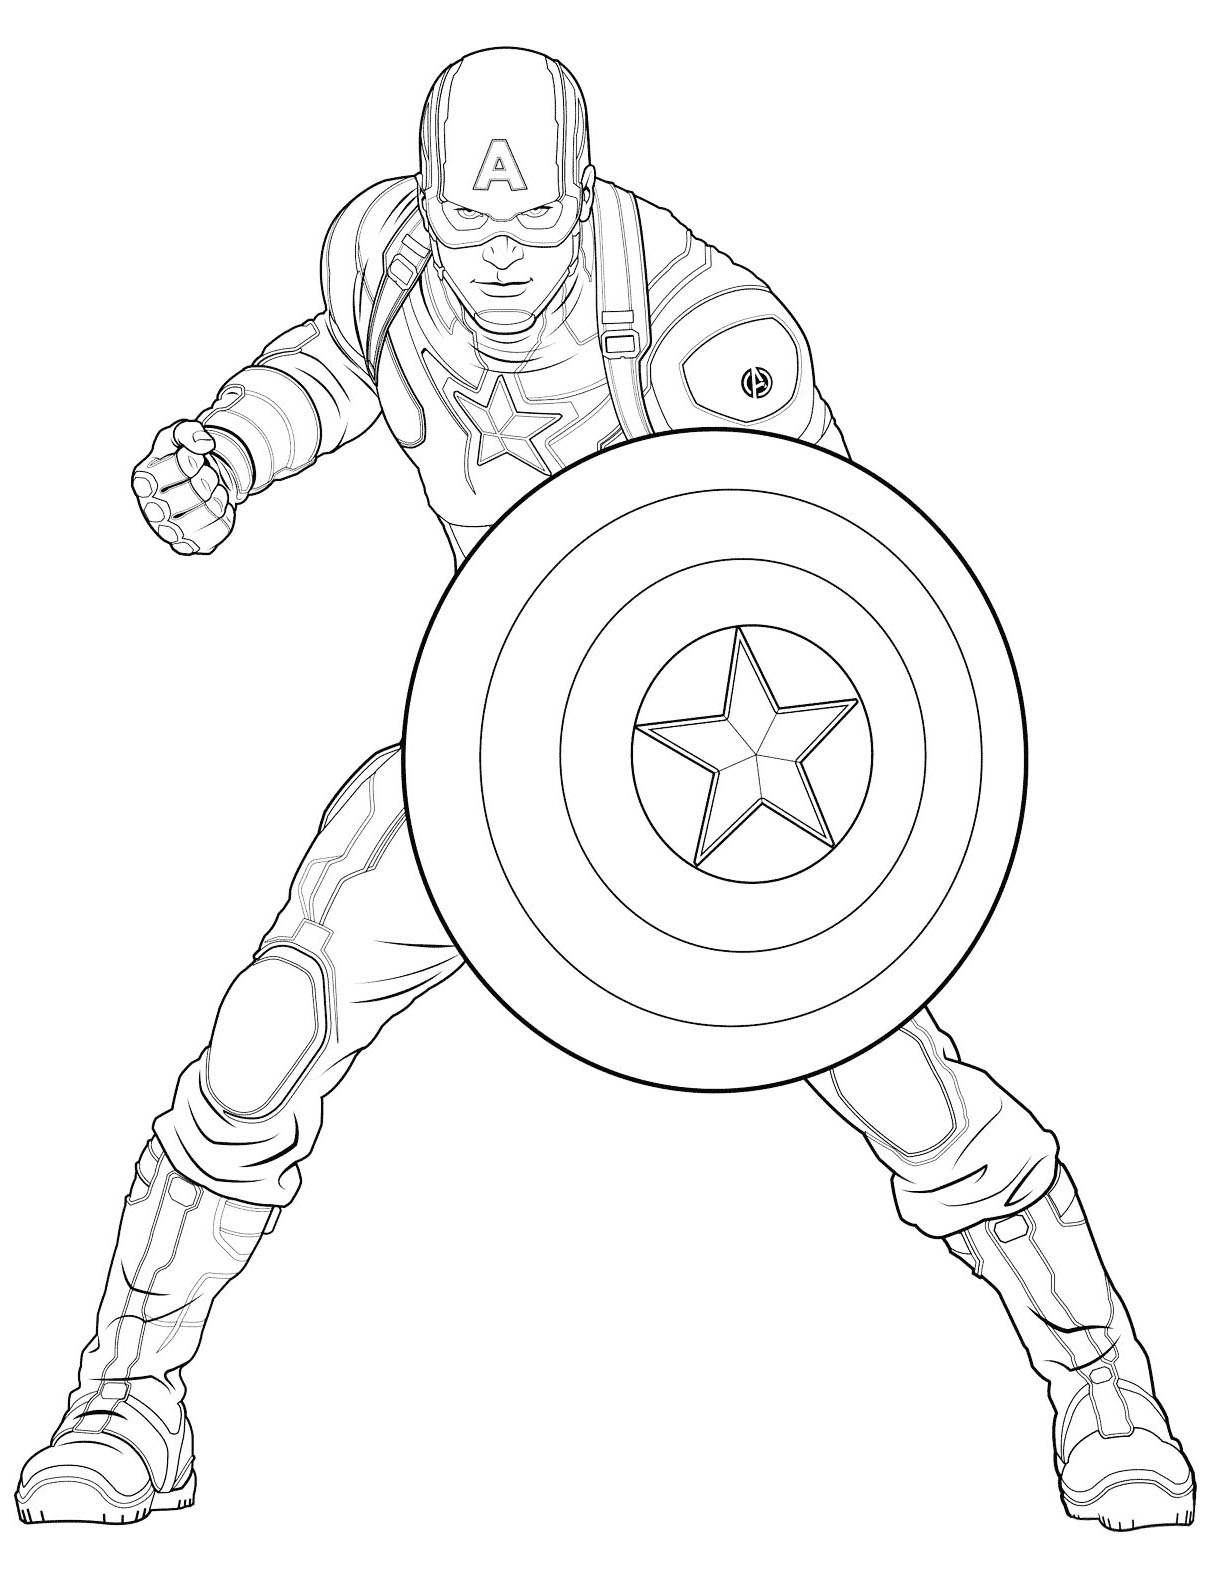 Captain America imagem para descarregar e imprimir para crianças